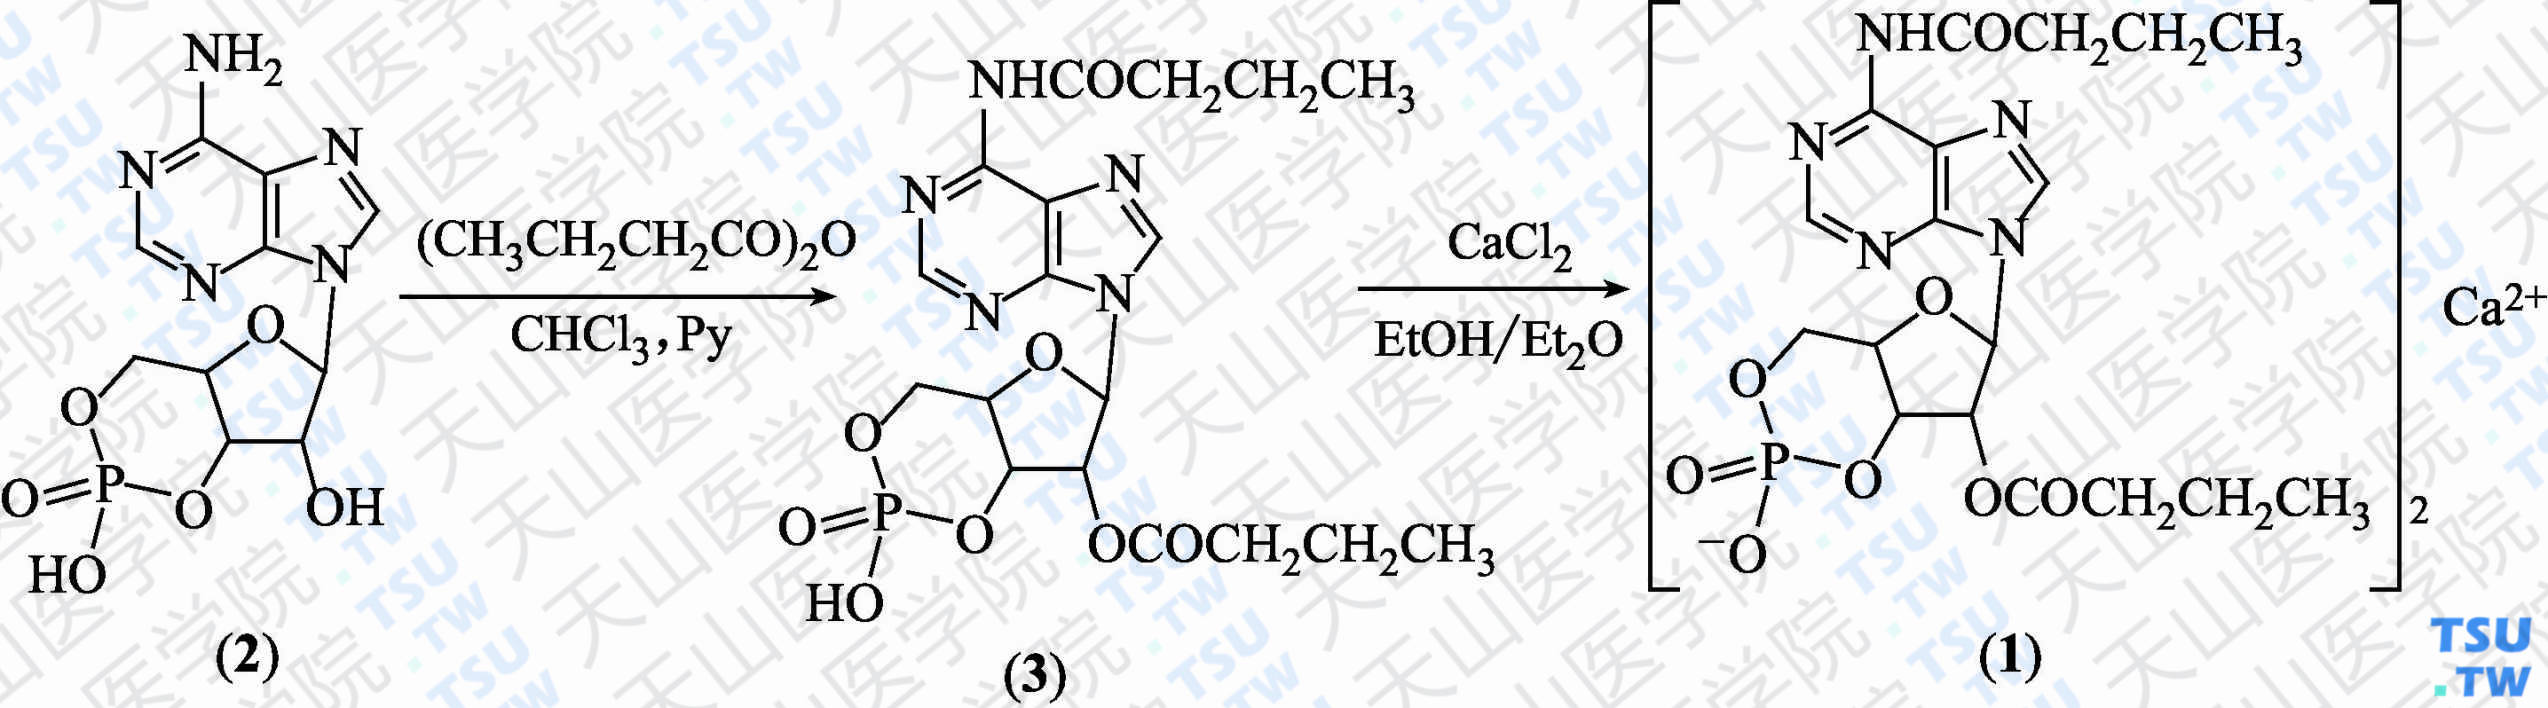 二丁酰环磷腺苷钙（分子式：（C<sub>18</sub>H<sub>23</sub>N<sub>5</sub>O<sub>8</sub>P）<sub>2</sub>Ca·2H<sub>2</sub>O）的合成方法路线及其结构式